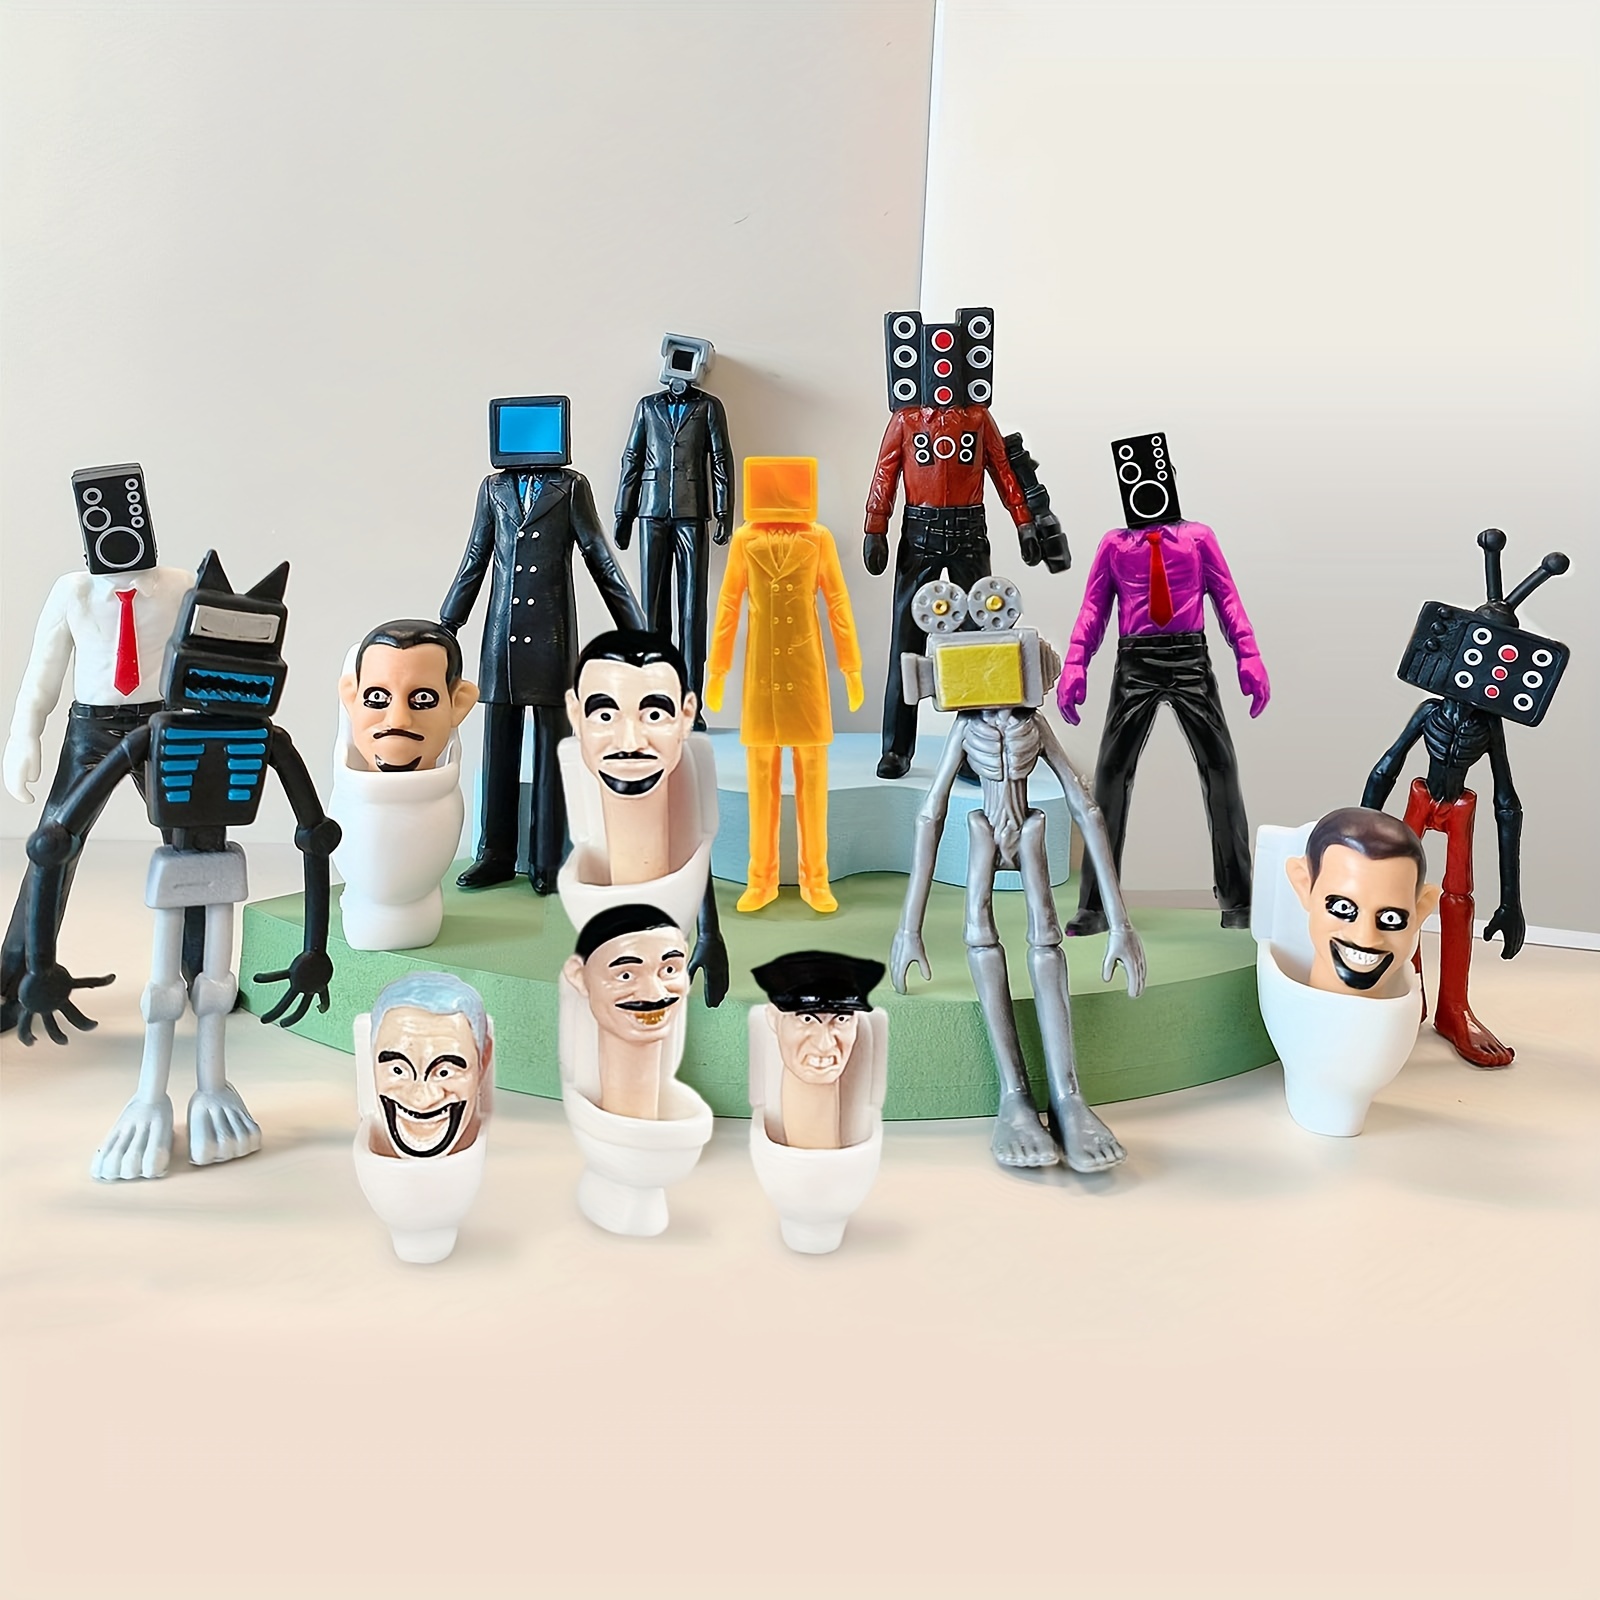 Skibidi Toilet Figure Set Creative Game Action Figures Mini Toys